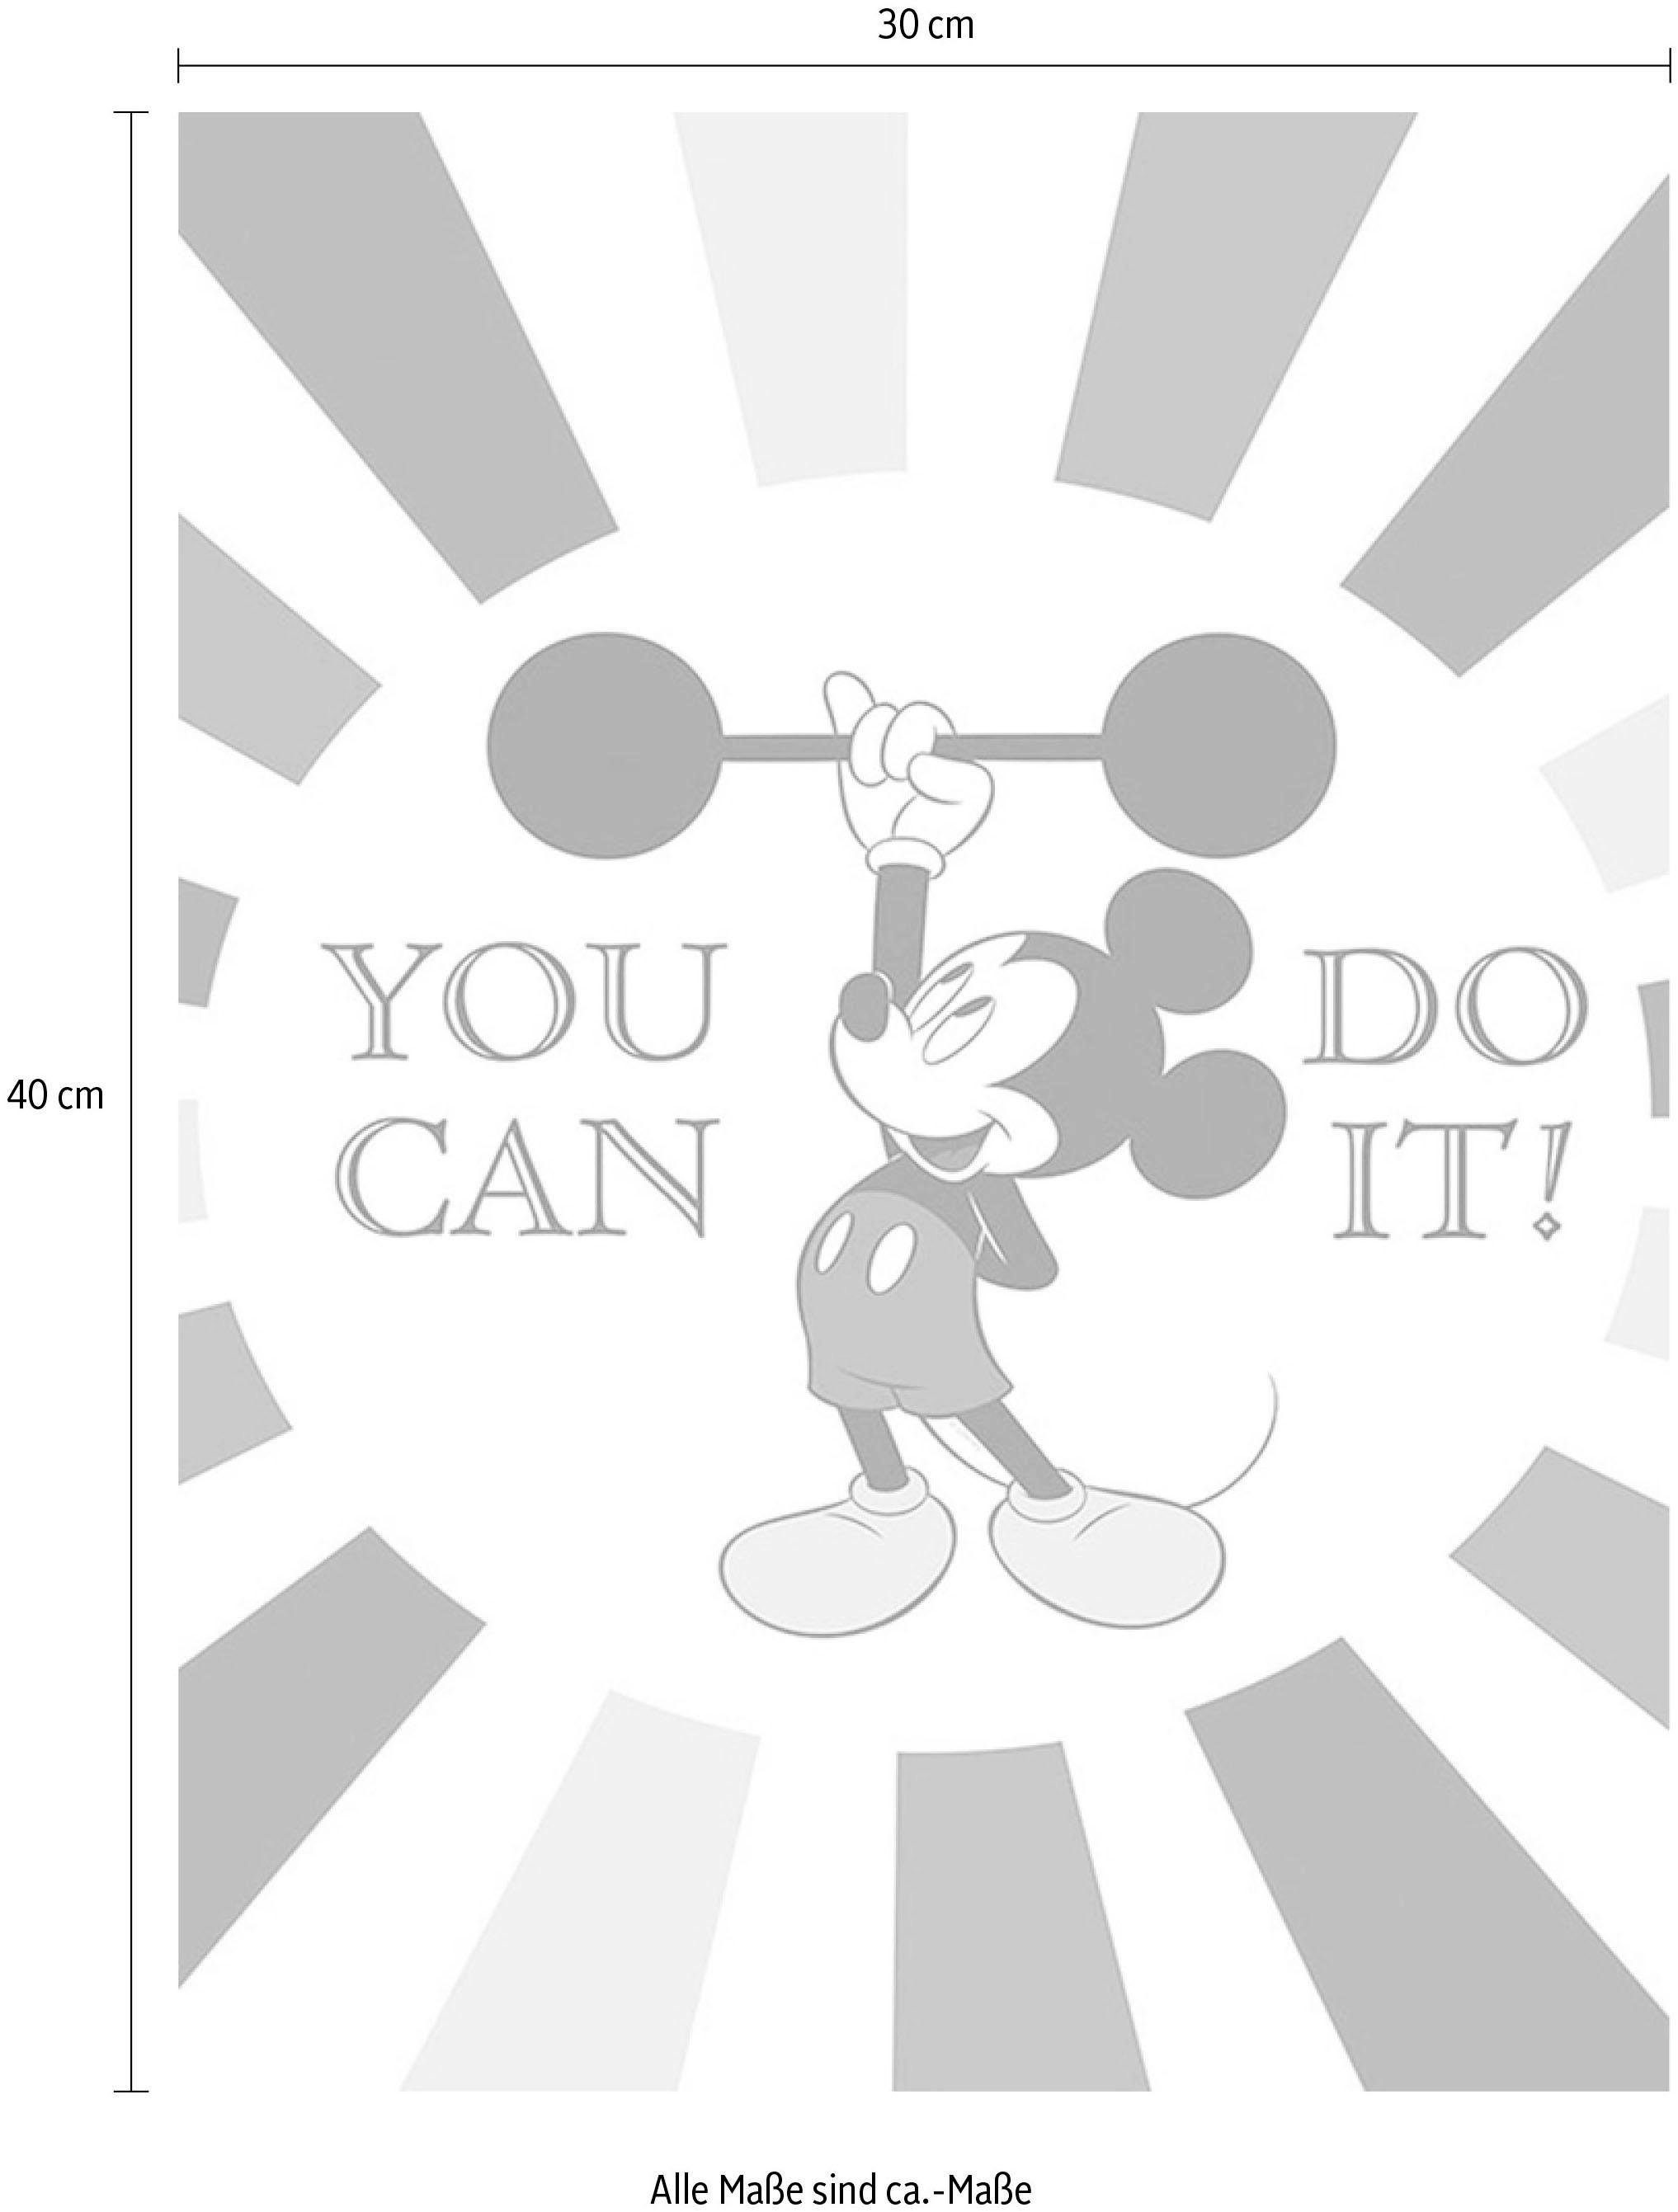 St), Kinderzimmer, Do Poster Schlafzimmer, (1 Komar Mickey Wohnzimmer it, Mouse Disney